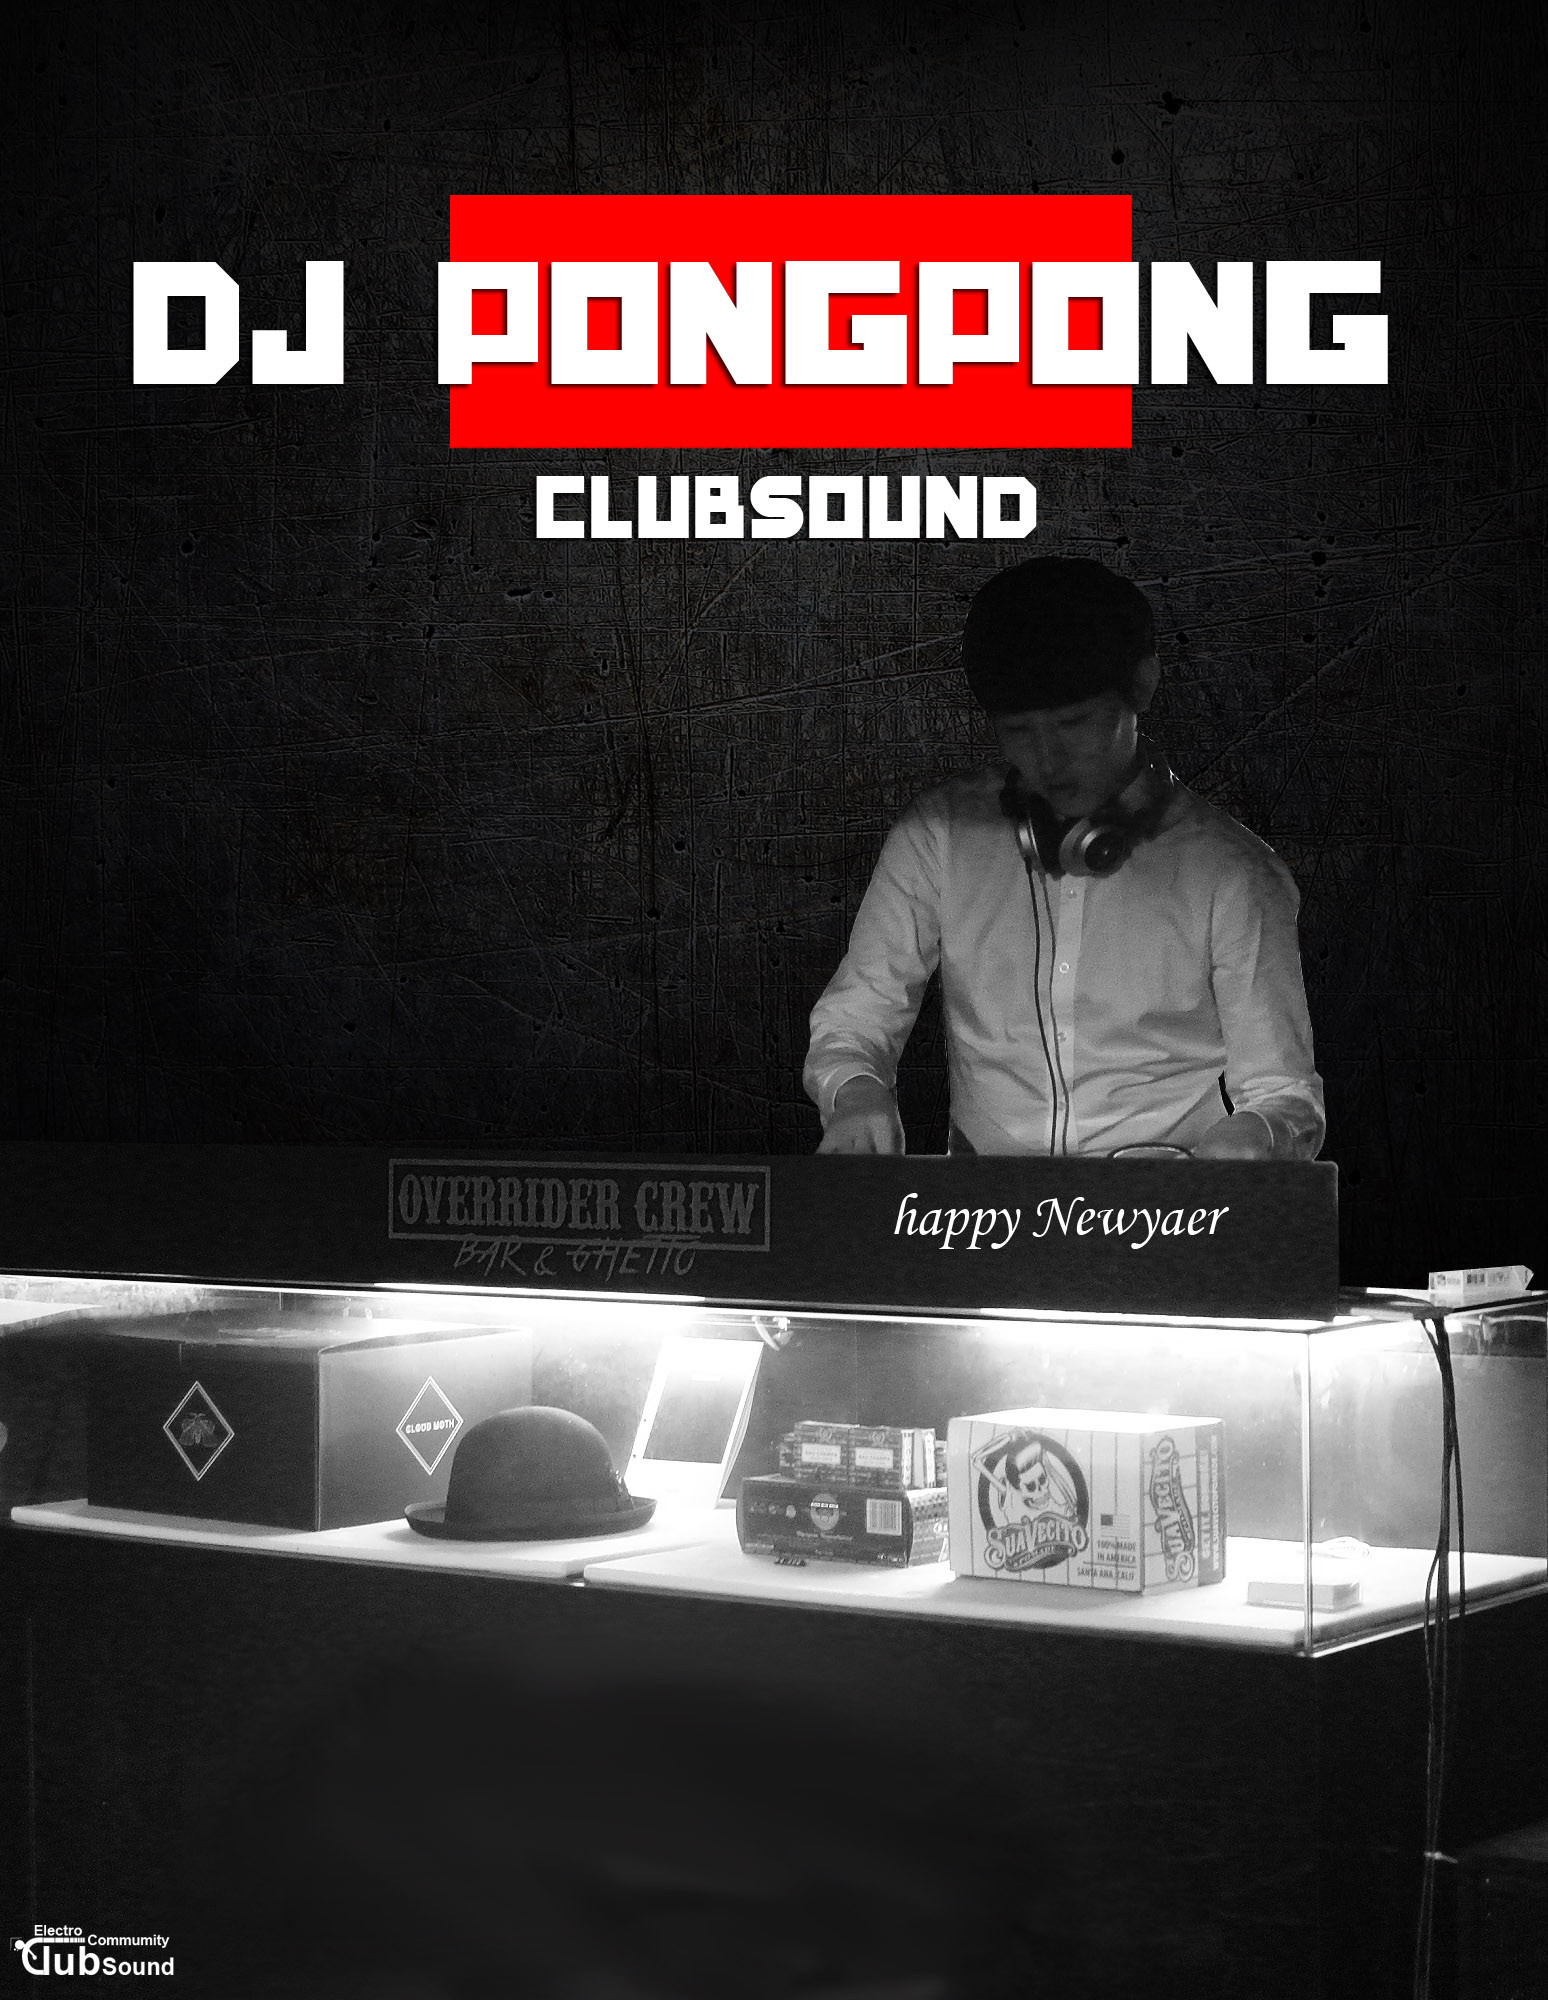 KakaoTalk_20151230_234736181.jpg : DJ Pong Pong 완전 터지는 새로운 믹셋!! 등장!! 나도 베스트 가보자 3탄!! 즐감하세영!!!